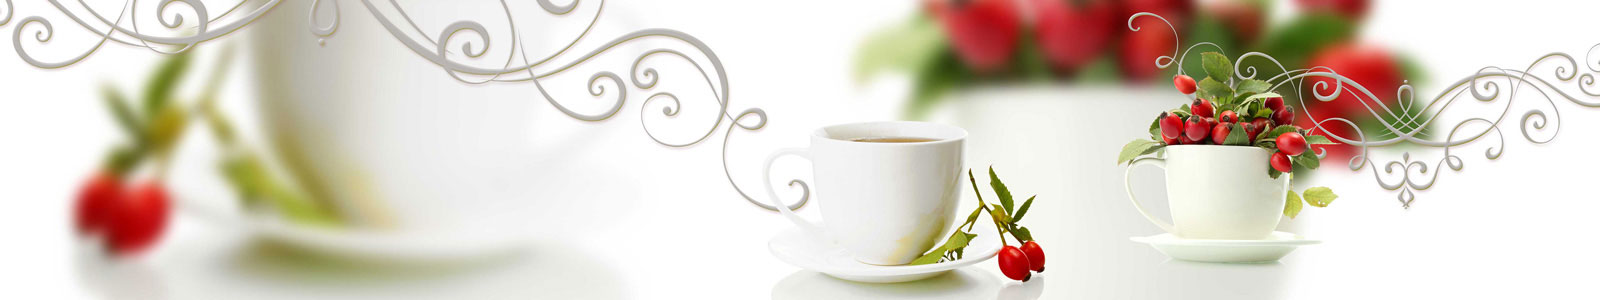 №6041 - Чашки чаю с шиповником на светлом фоне